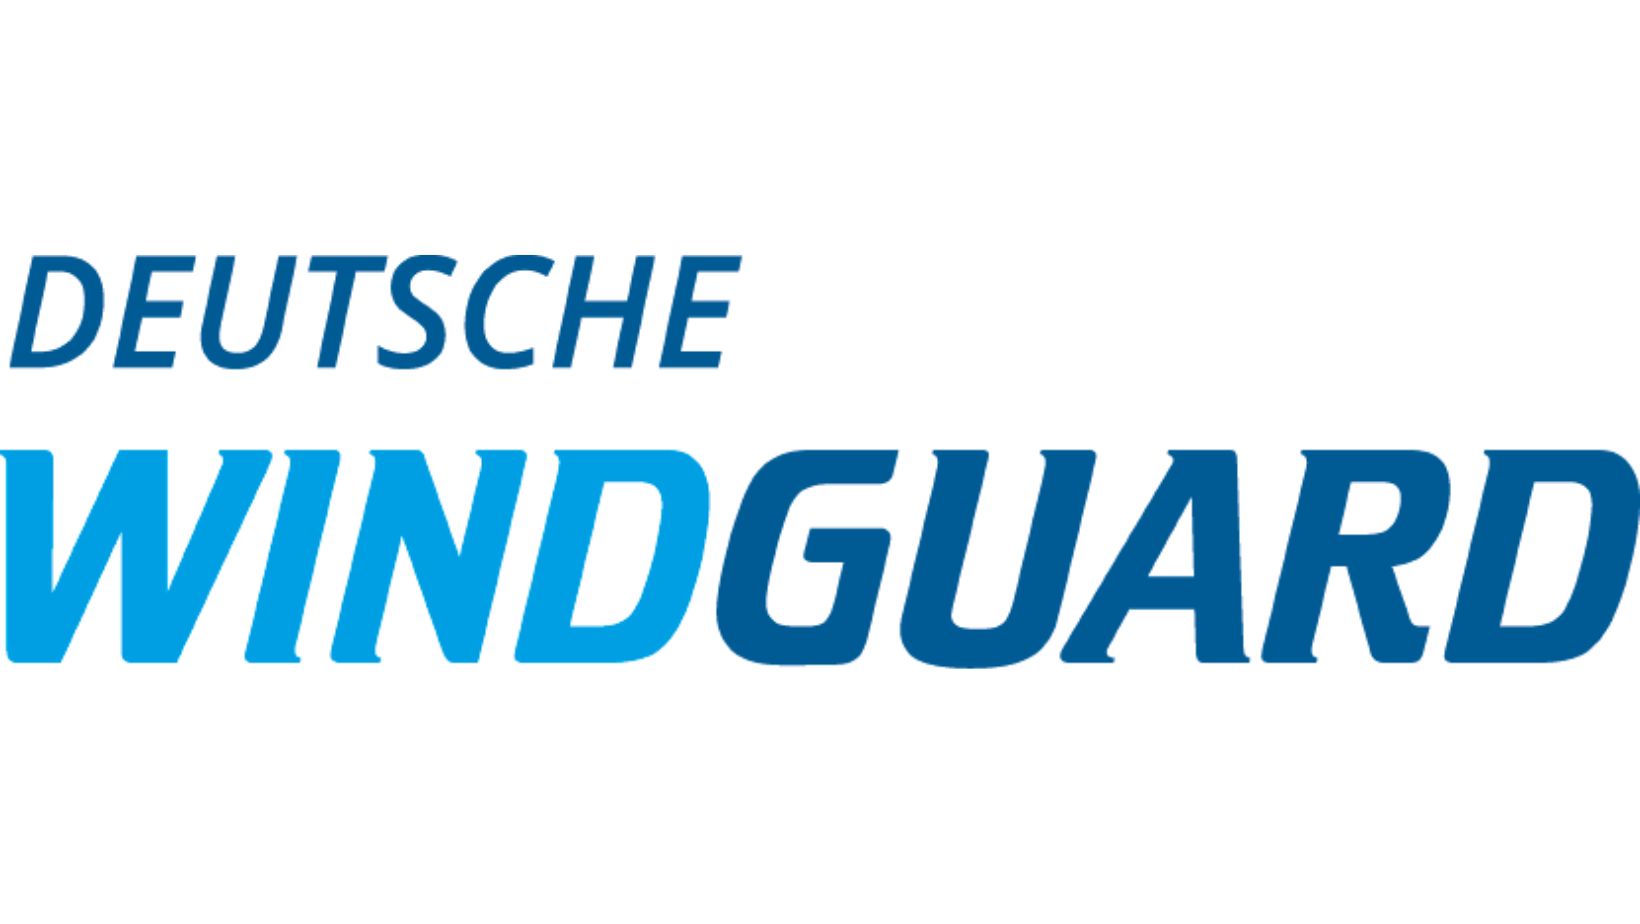 Logo als Schriftzug: "Deutsche Windguard"